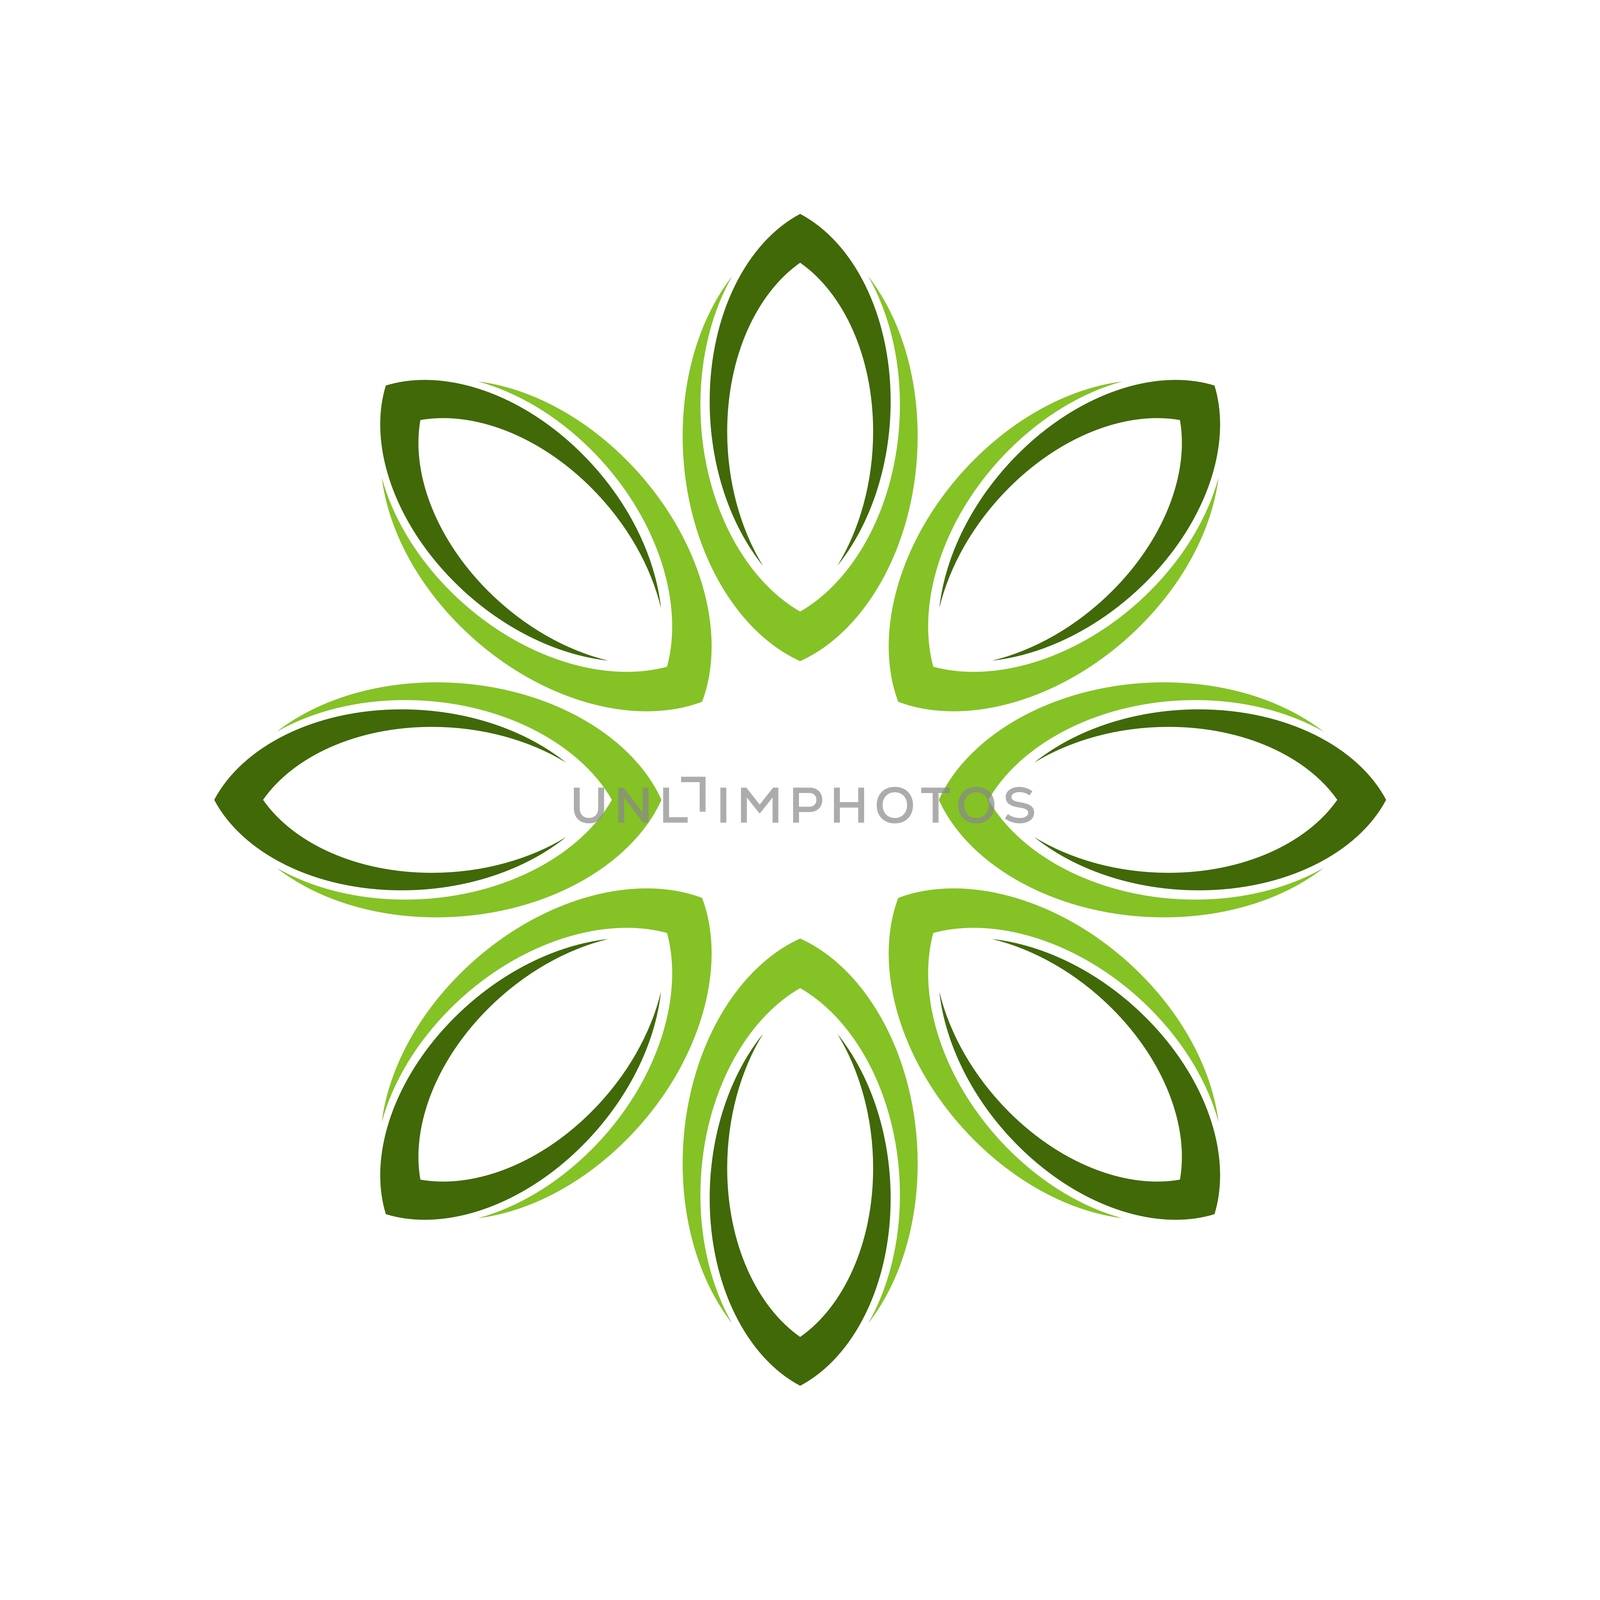 Circle Green Leaf Logo Template Illustration Design. Vector EPS 10.